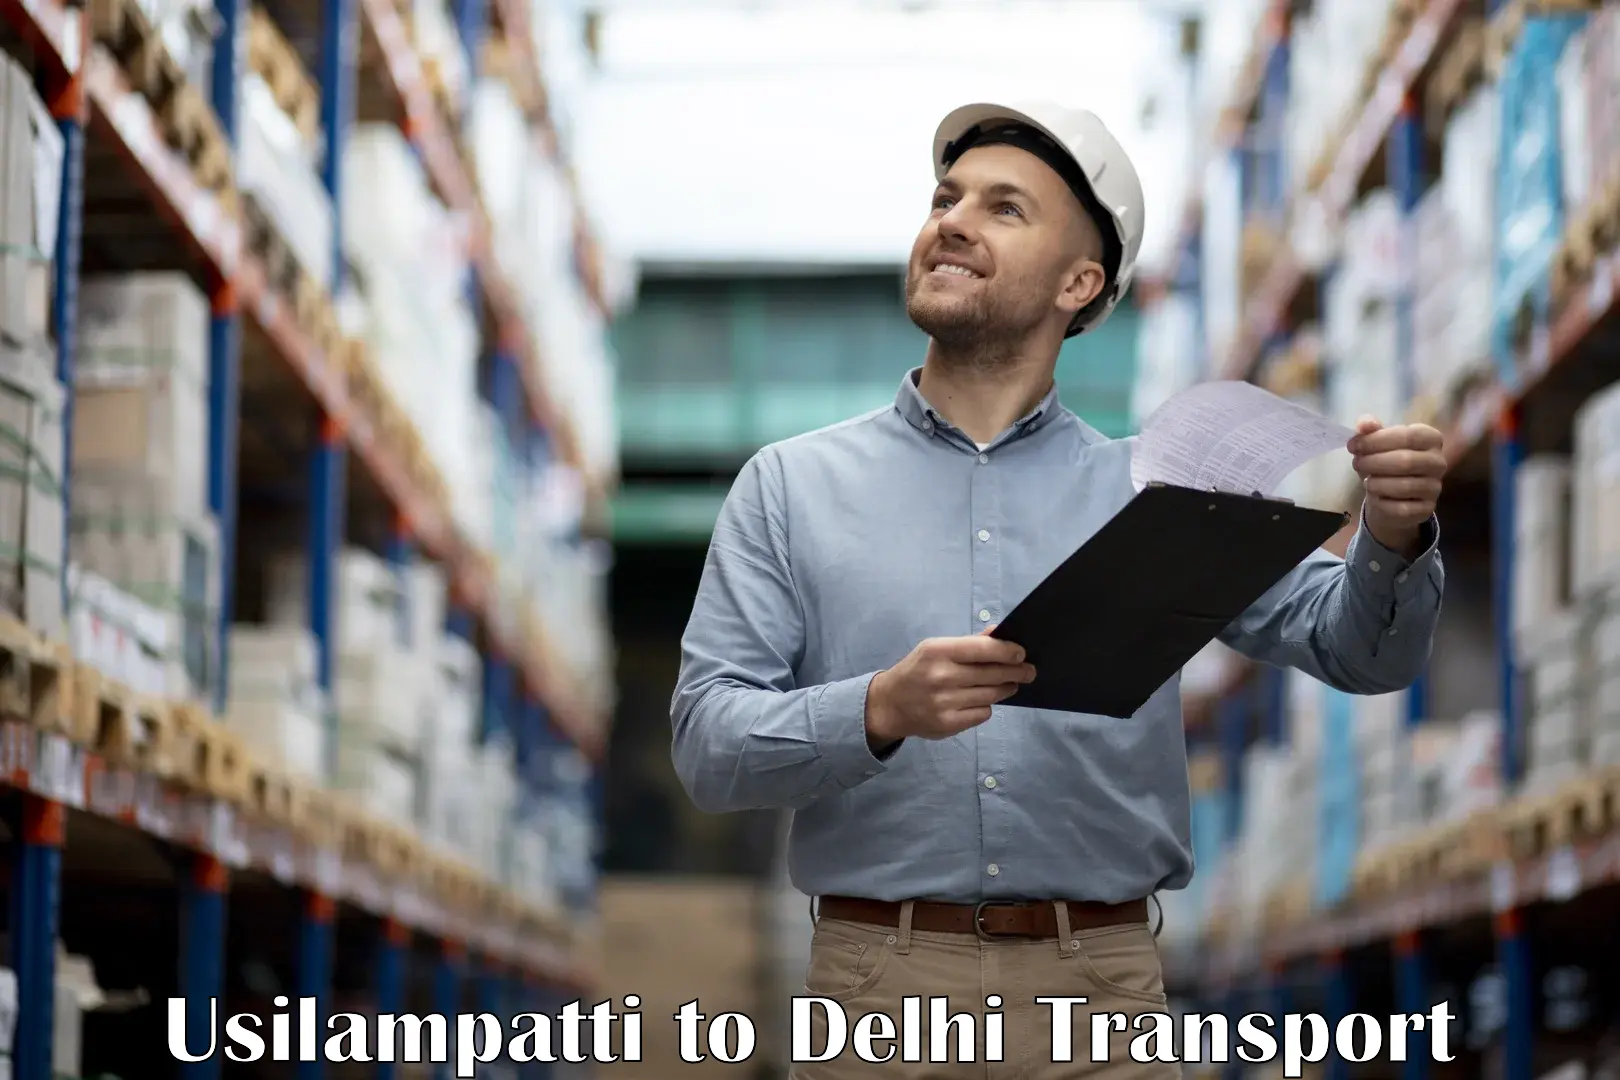 Road transport online services Usilampatti to NIT Delhi